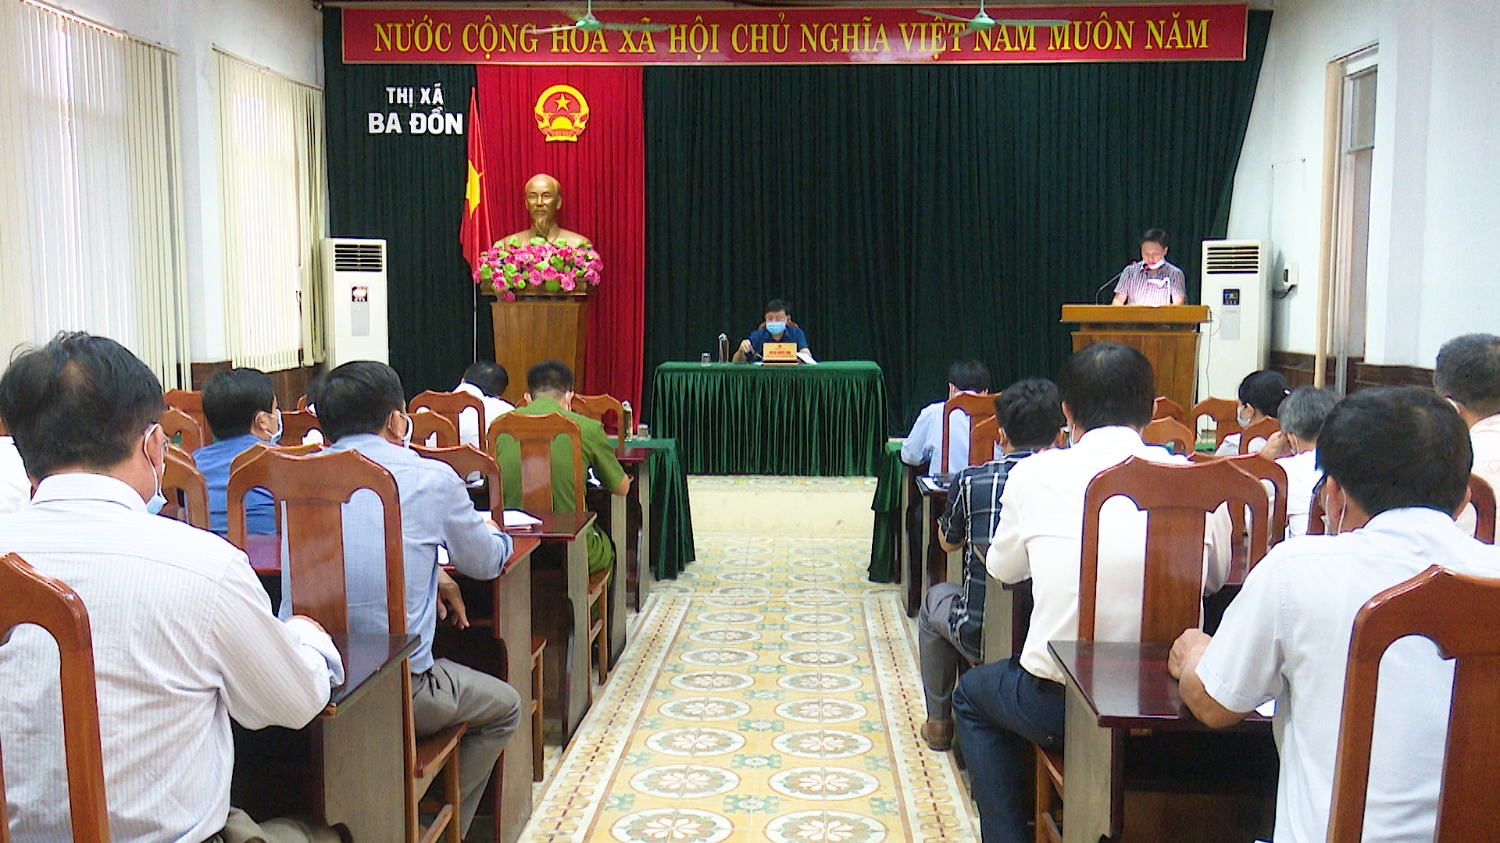 Toàn cảnh buổi họp đề nghị xét, công nhận thị xã Ba Đồn hoàn thành nhiệm vụ xây dựng nông thôn mới.